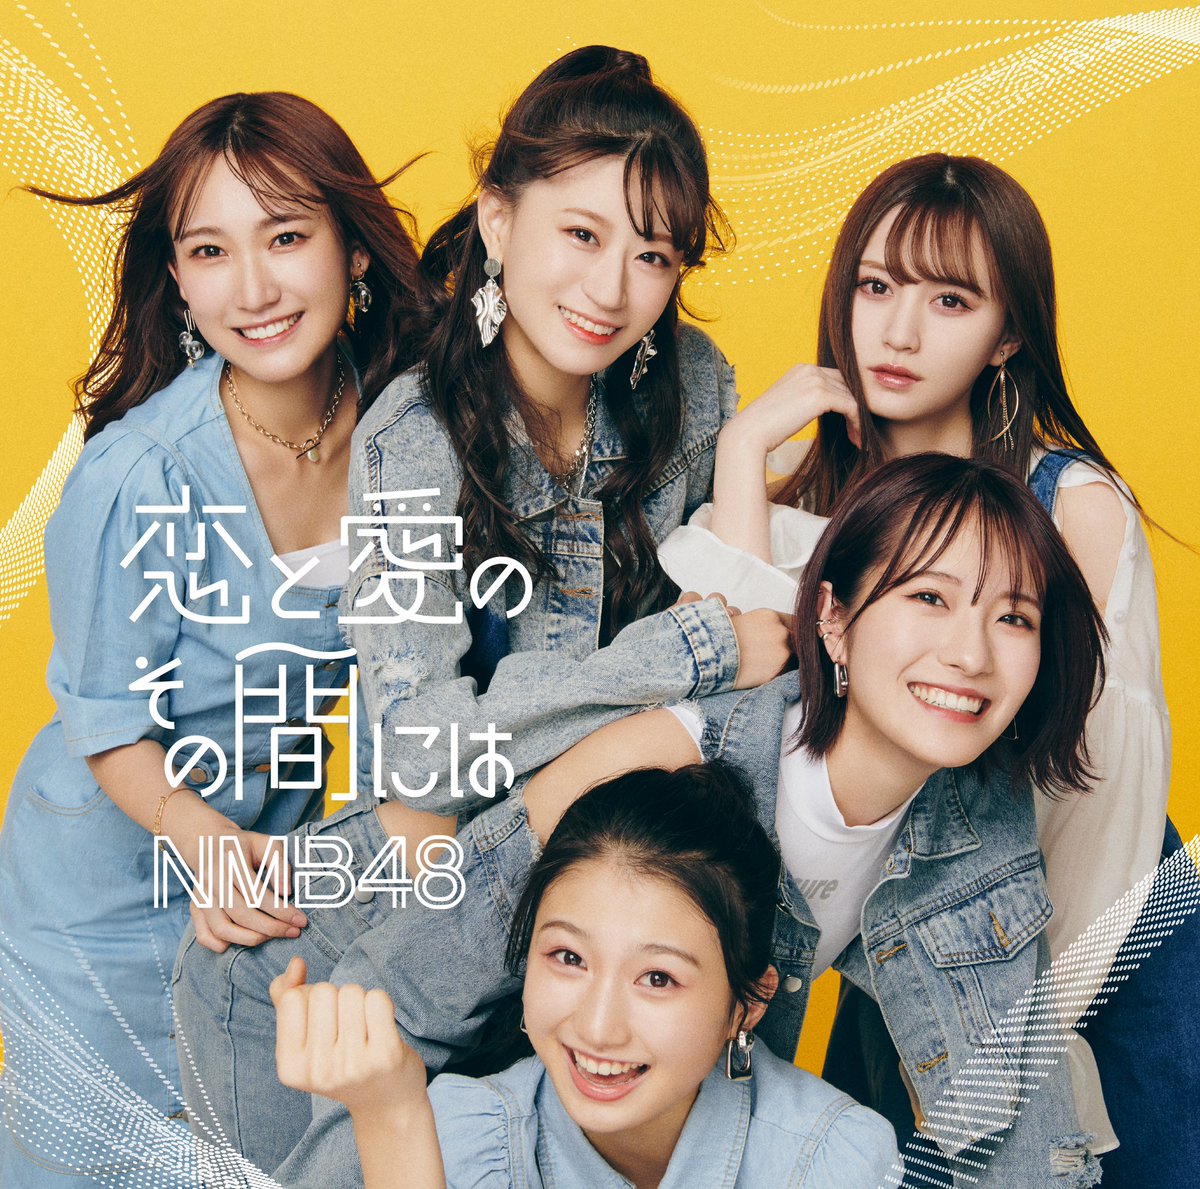 Cover art for『NMB48 - Koi to Ai no Sono Aida ni wa』from the release『Koi to Ai no Sono Aida ni wa』